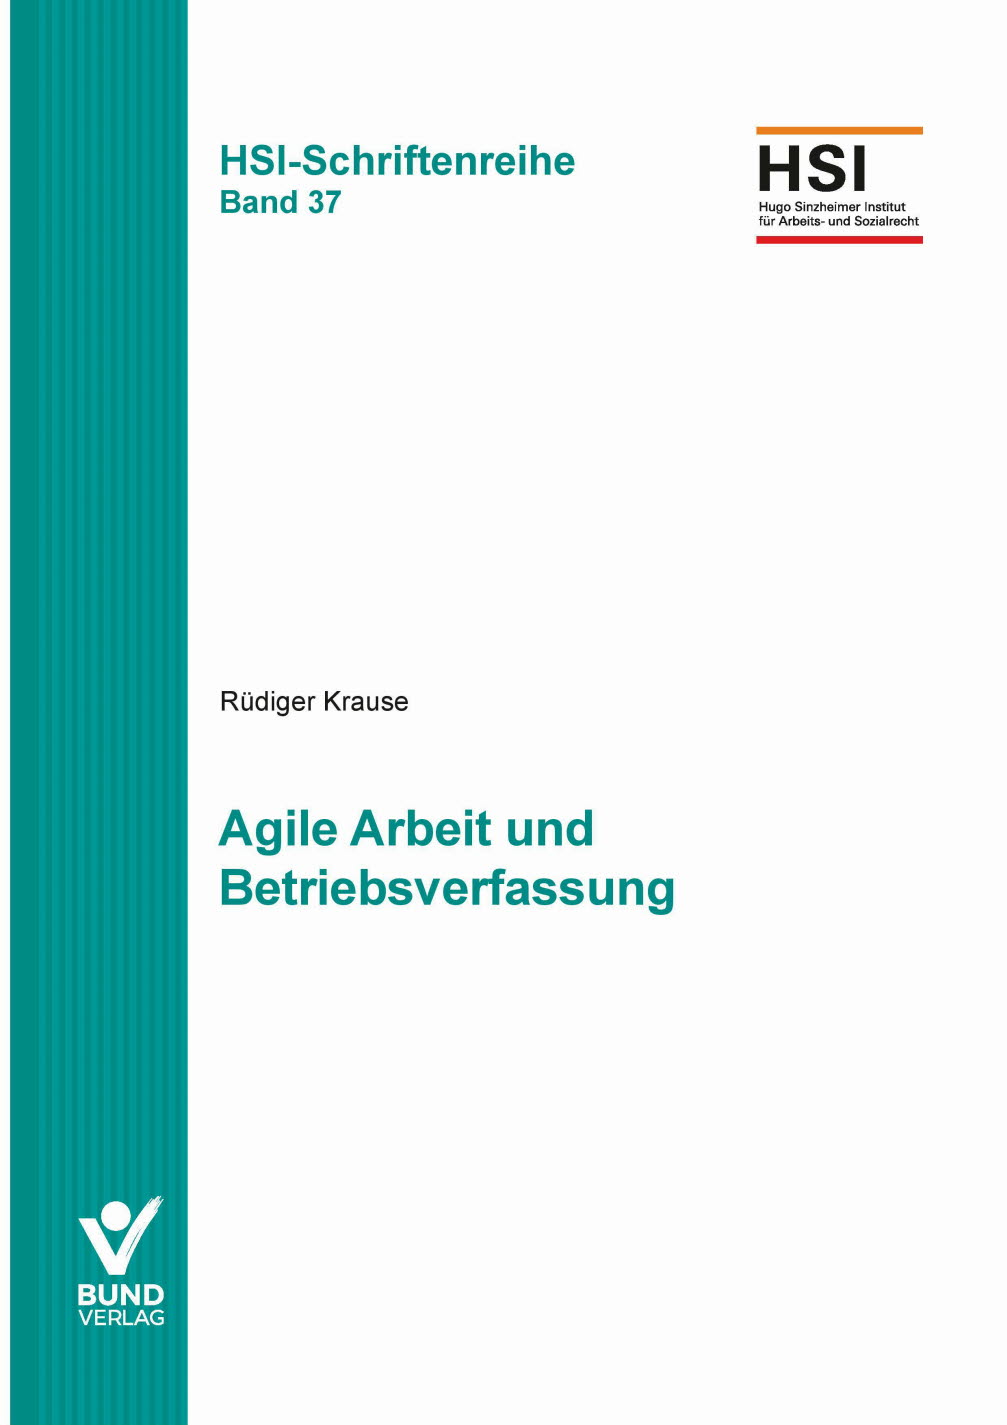 Agile Arbeit und Betriebsverfassung